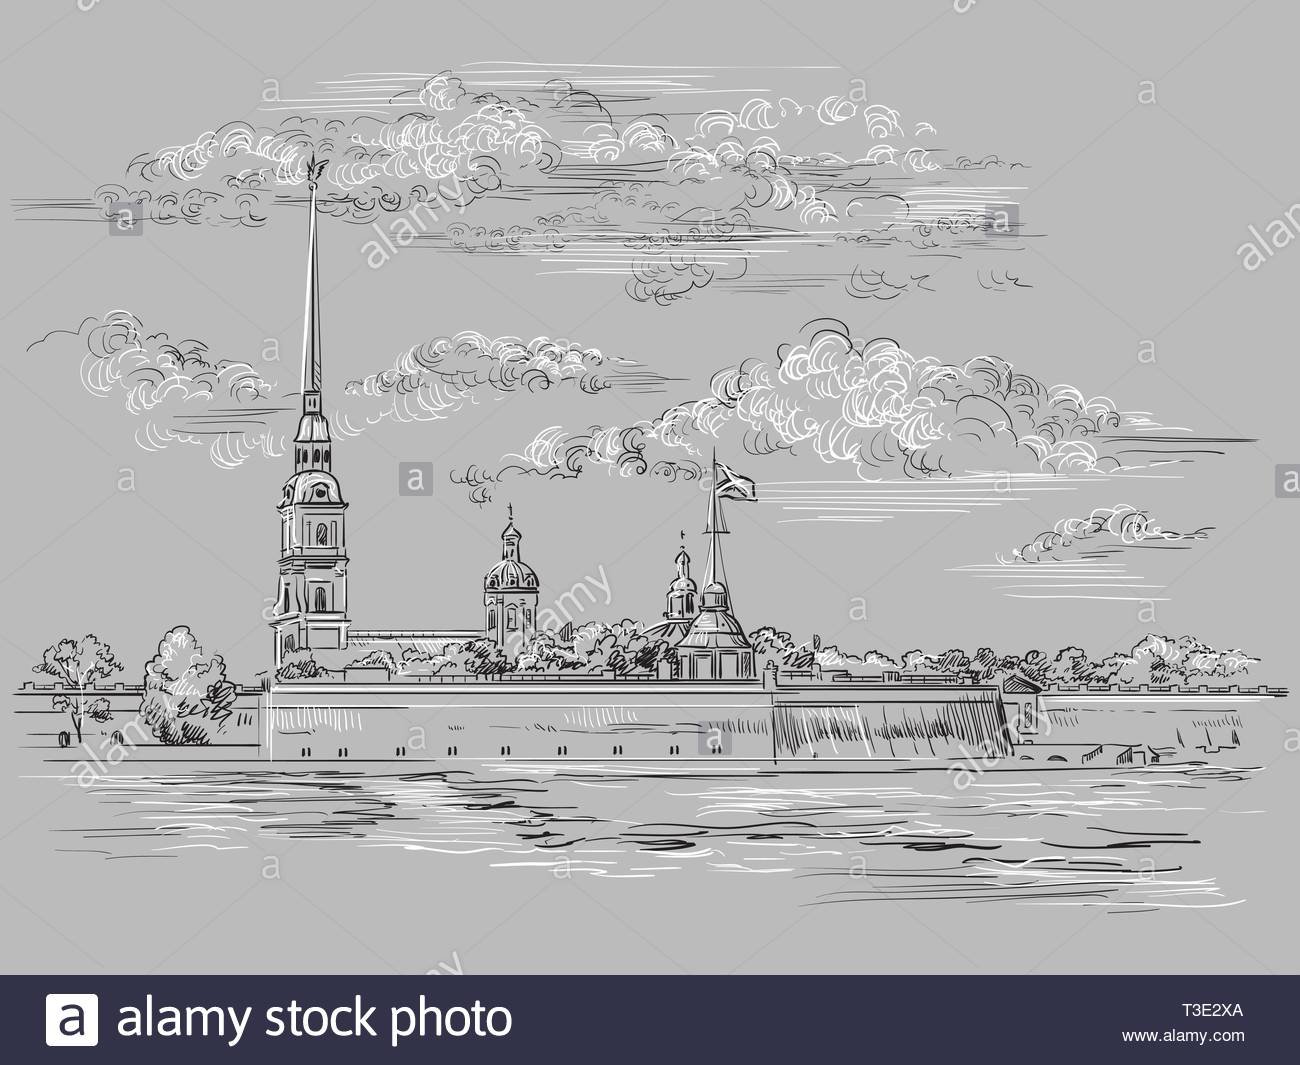 Петропавловская крепость в Санкт-Петербурге рисунок